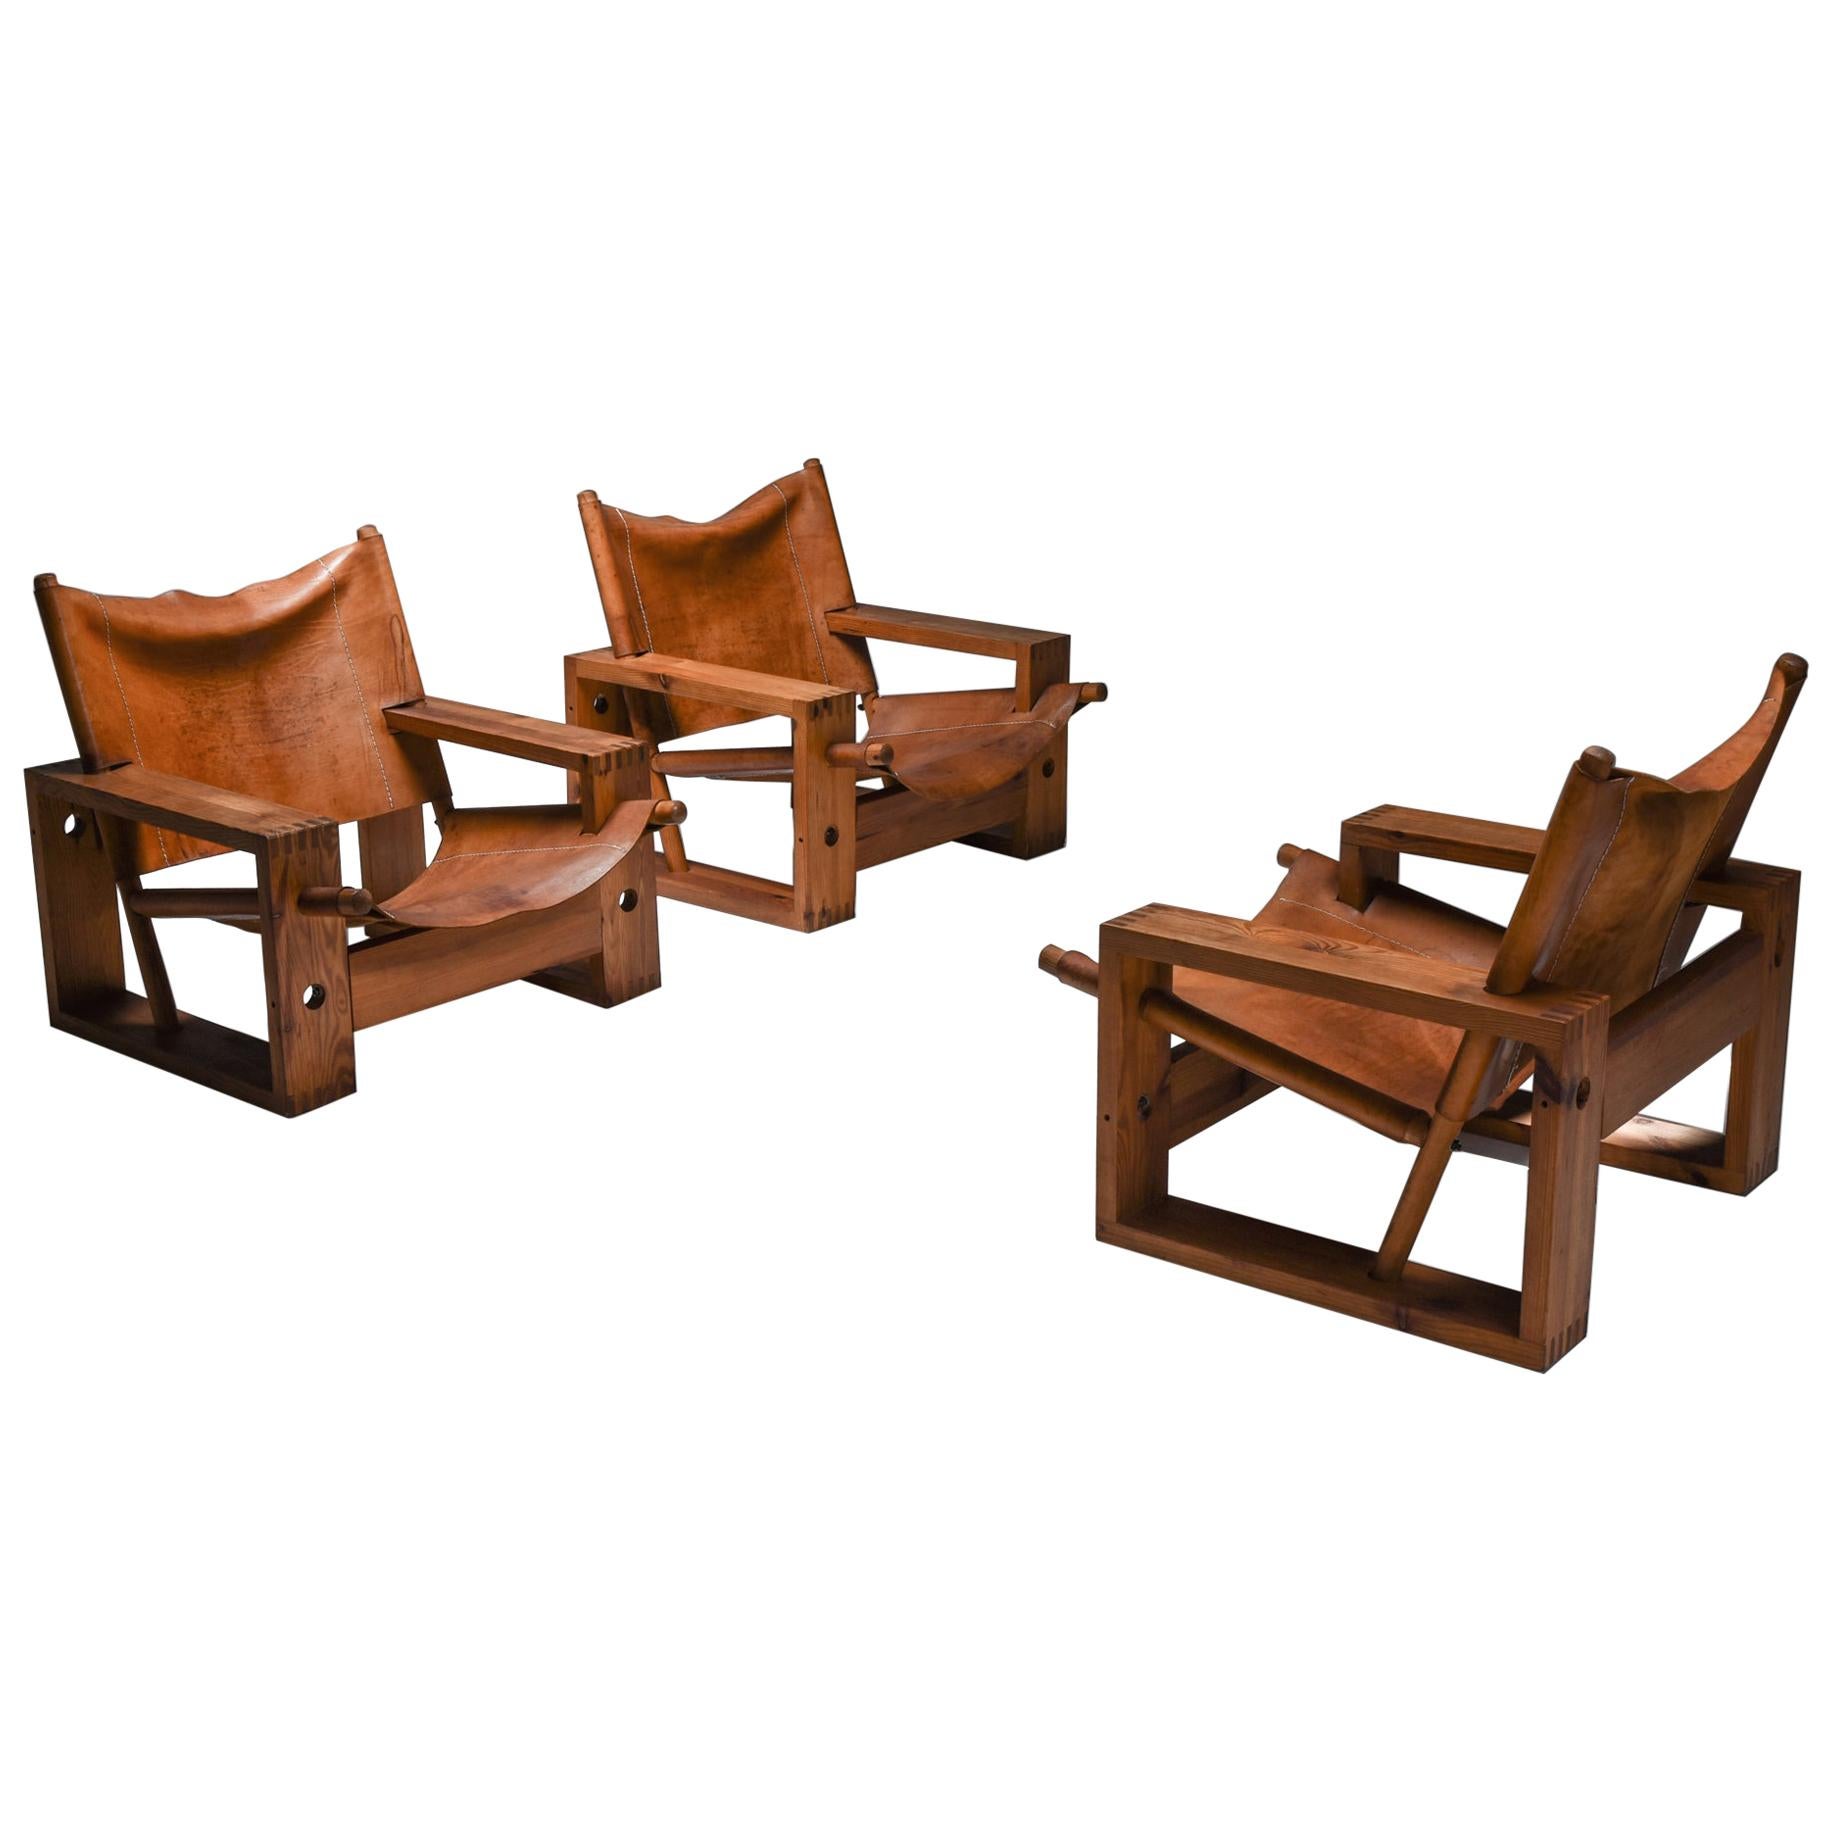 Cognac Leather and Pine Easy Chair by Ate Van Apeldoorn